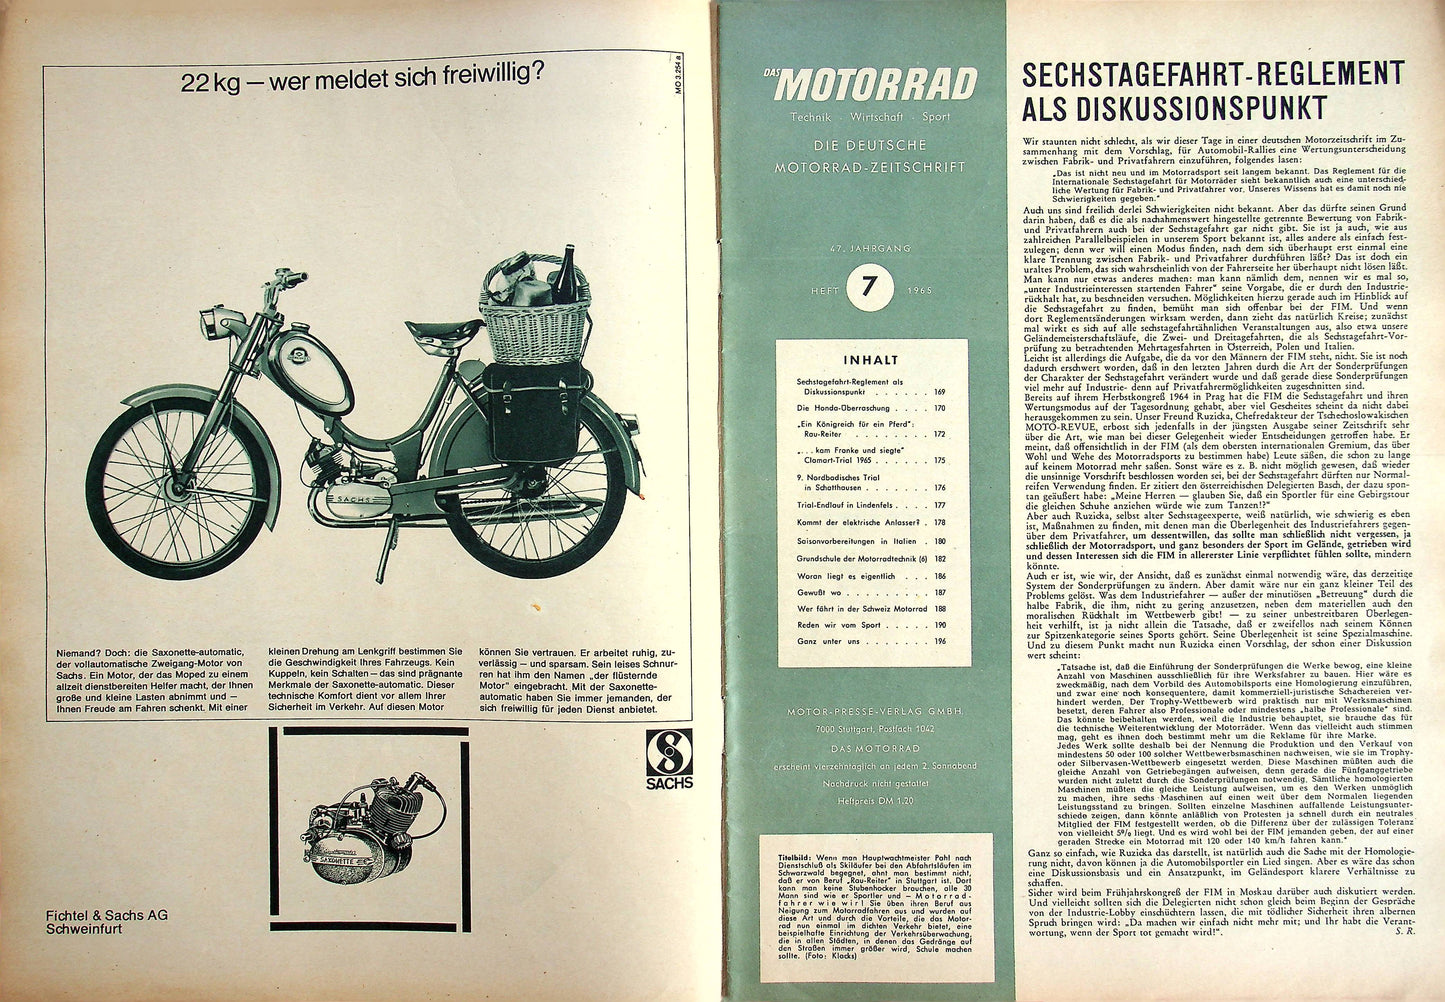 Motorrad 07/1965